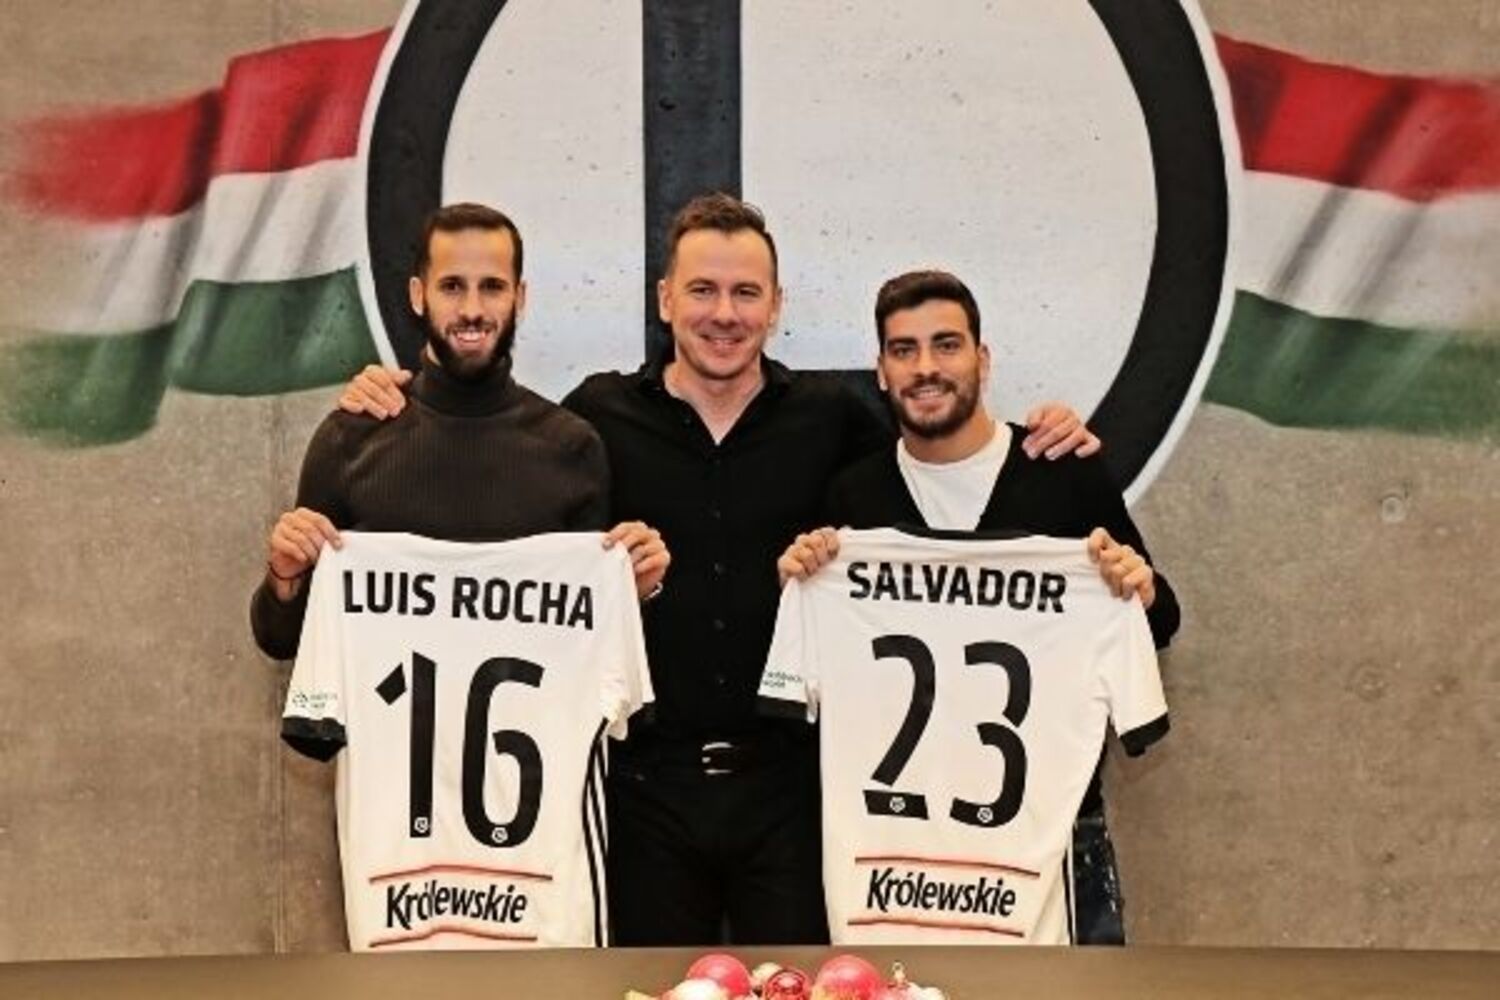 OFICJALNIE: Salvador Agra i Luís Rocha piłkarzami Legii